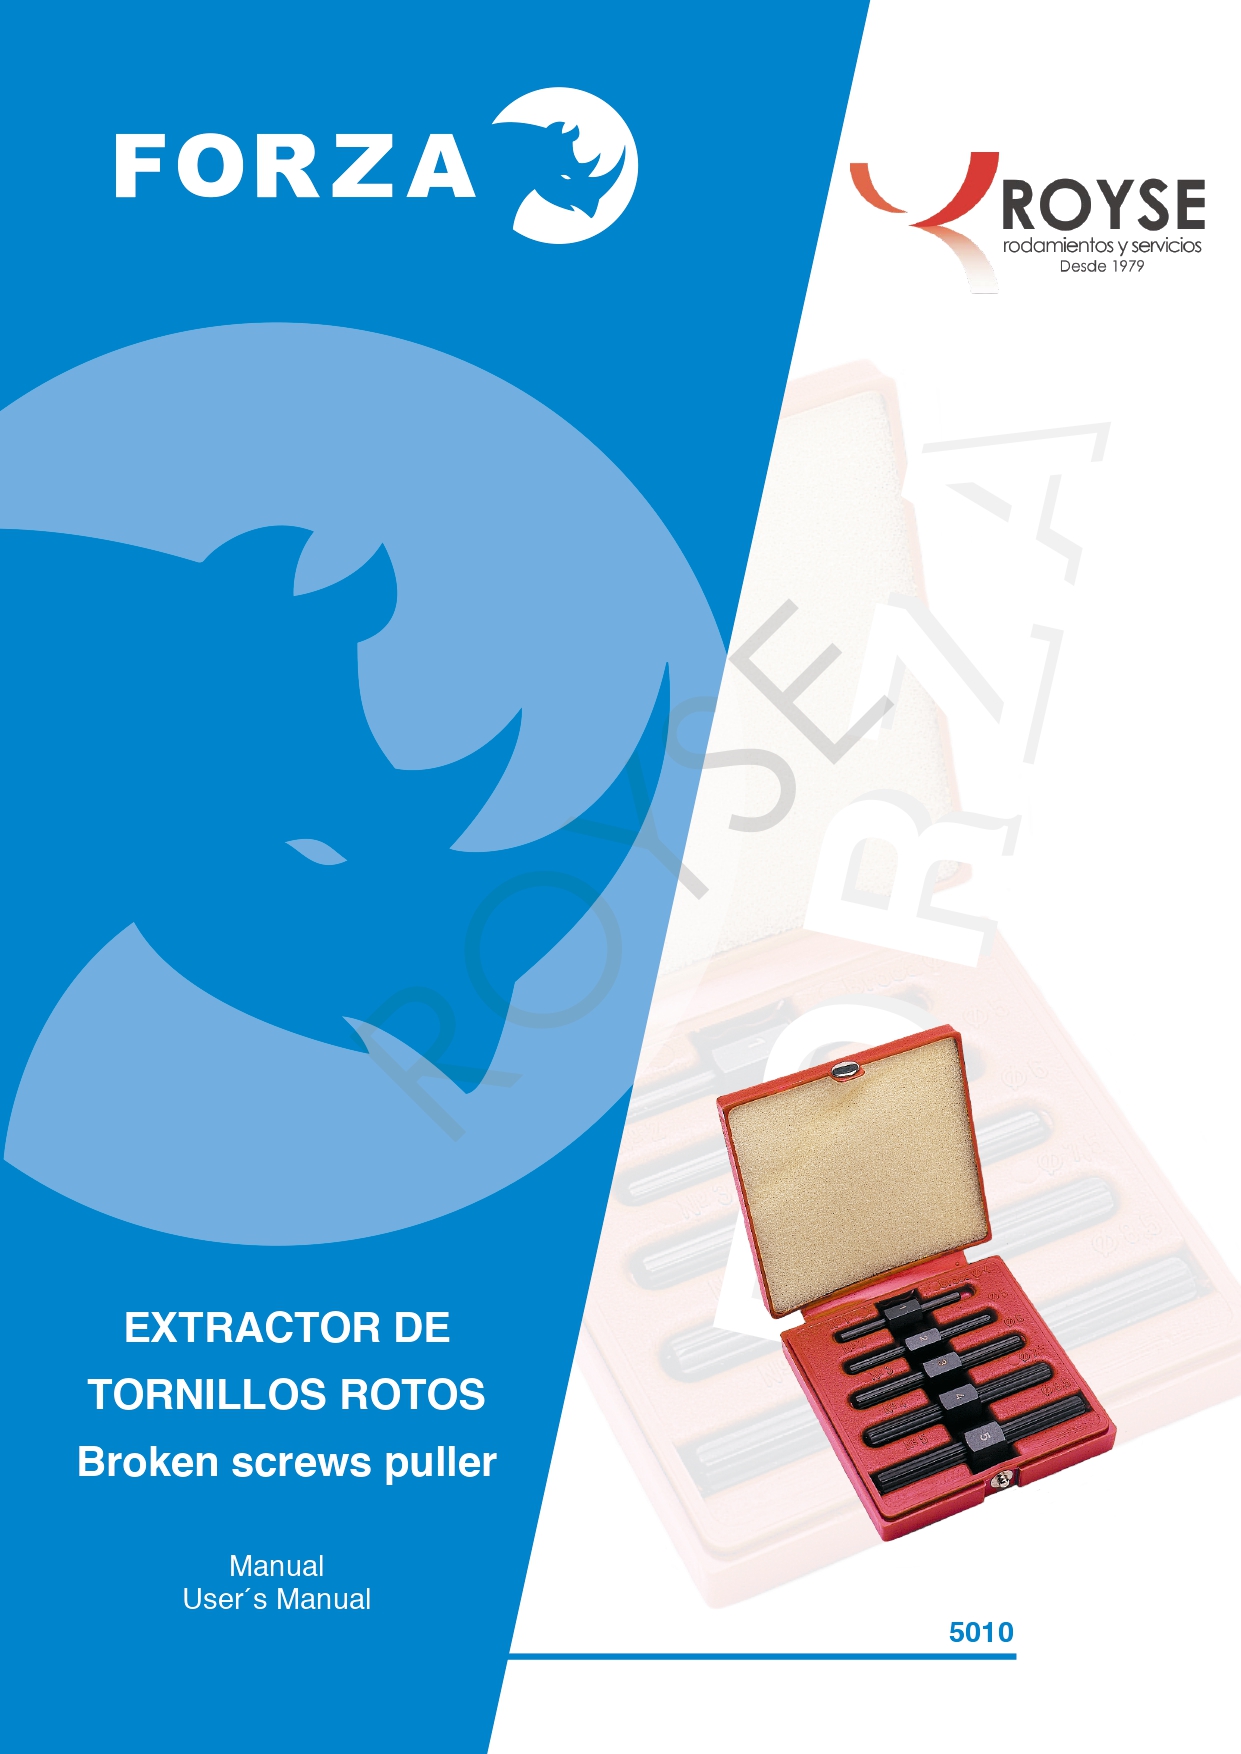 Catálogos Suministro industrial - Royse, Rodamientos y Servicios